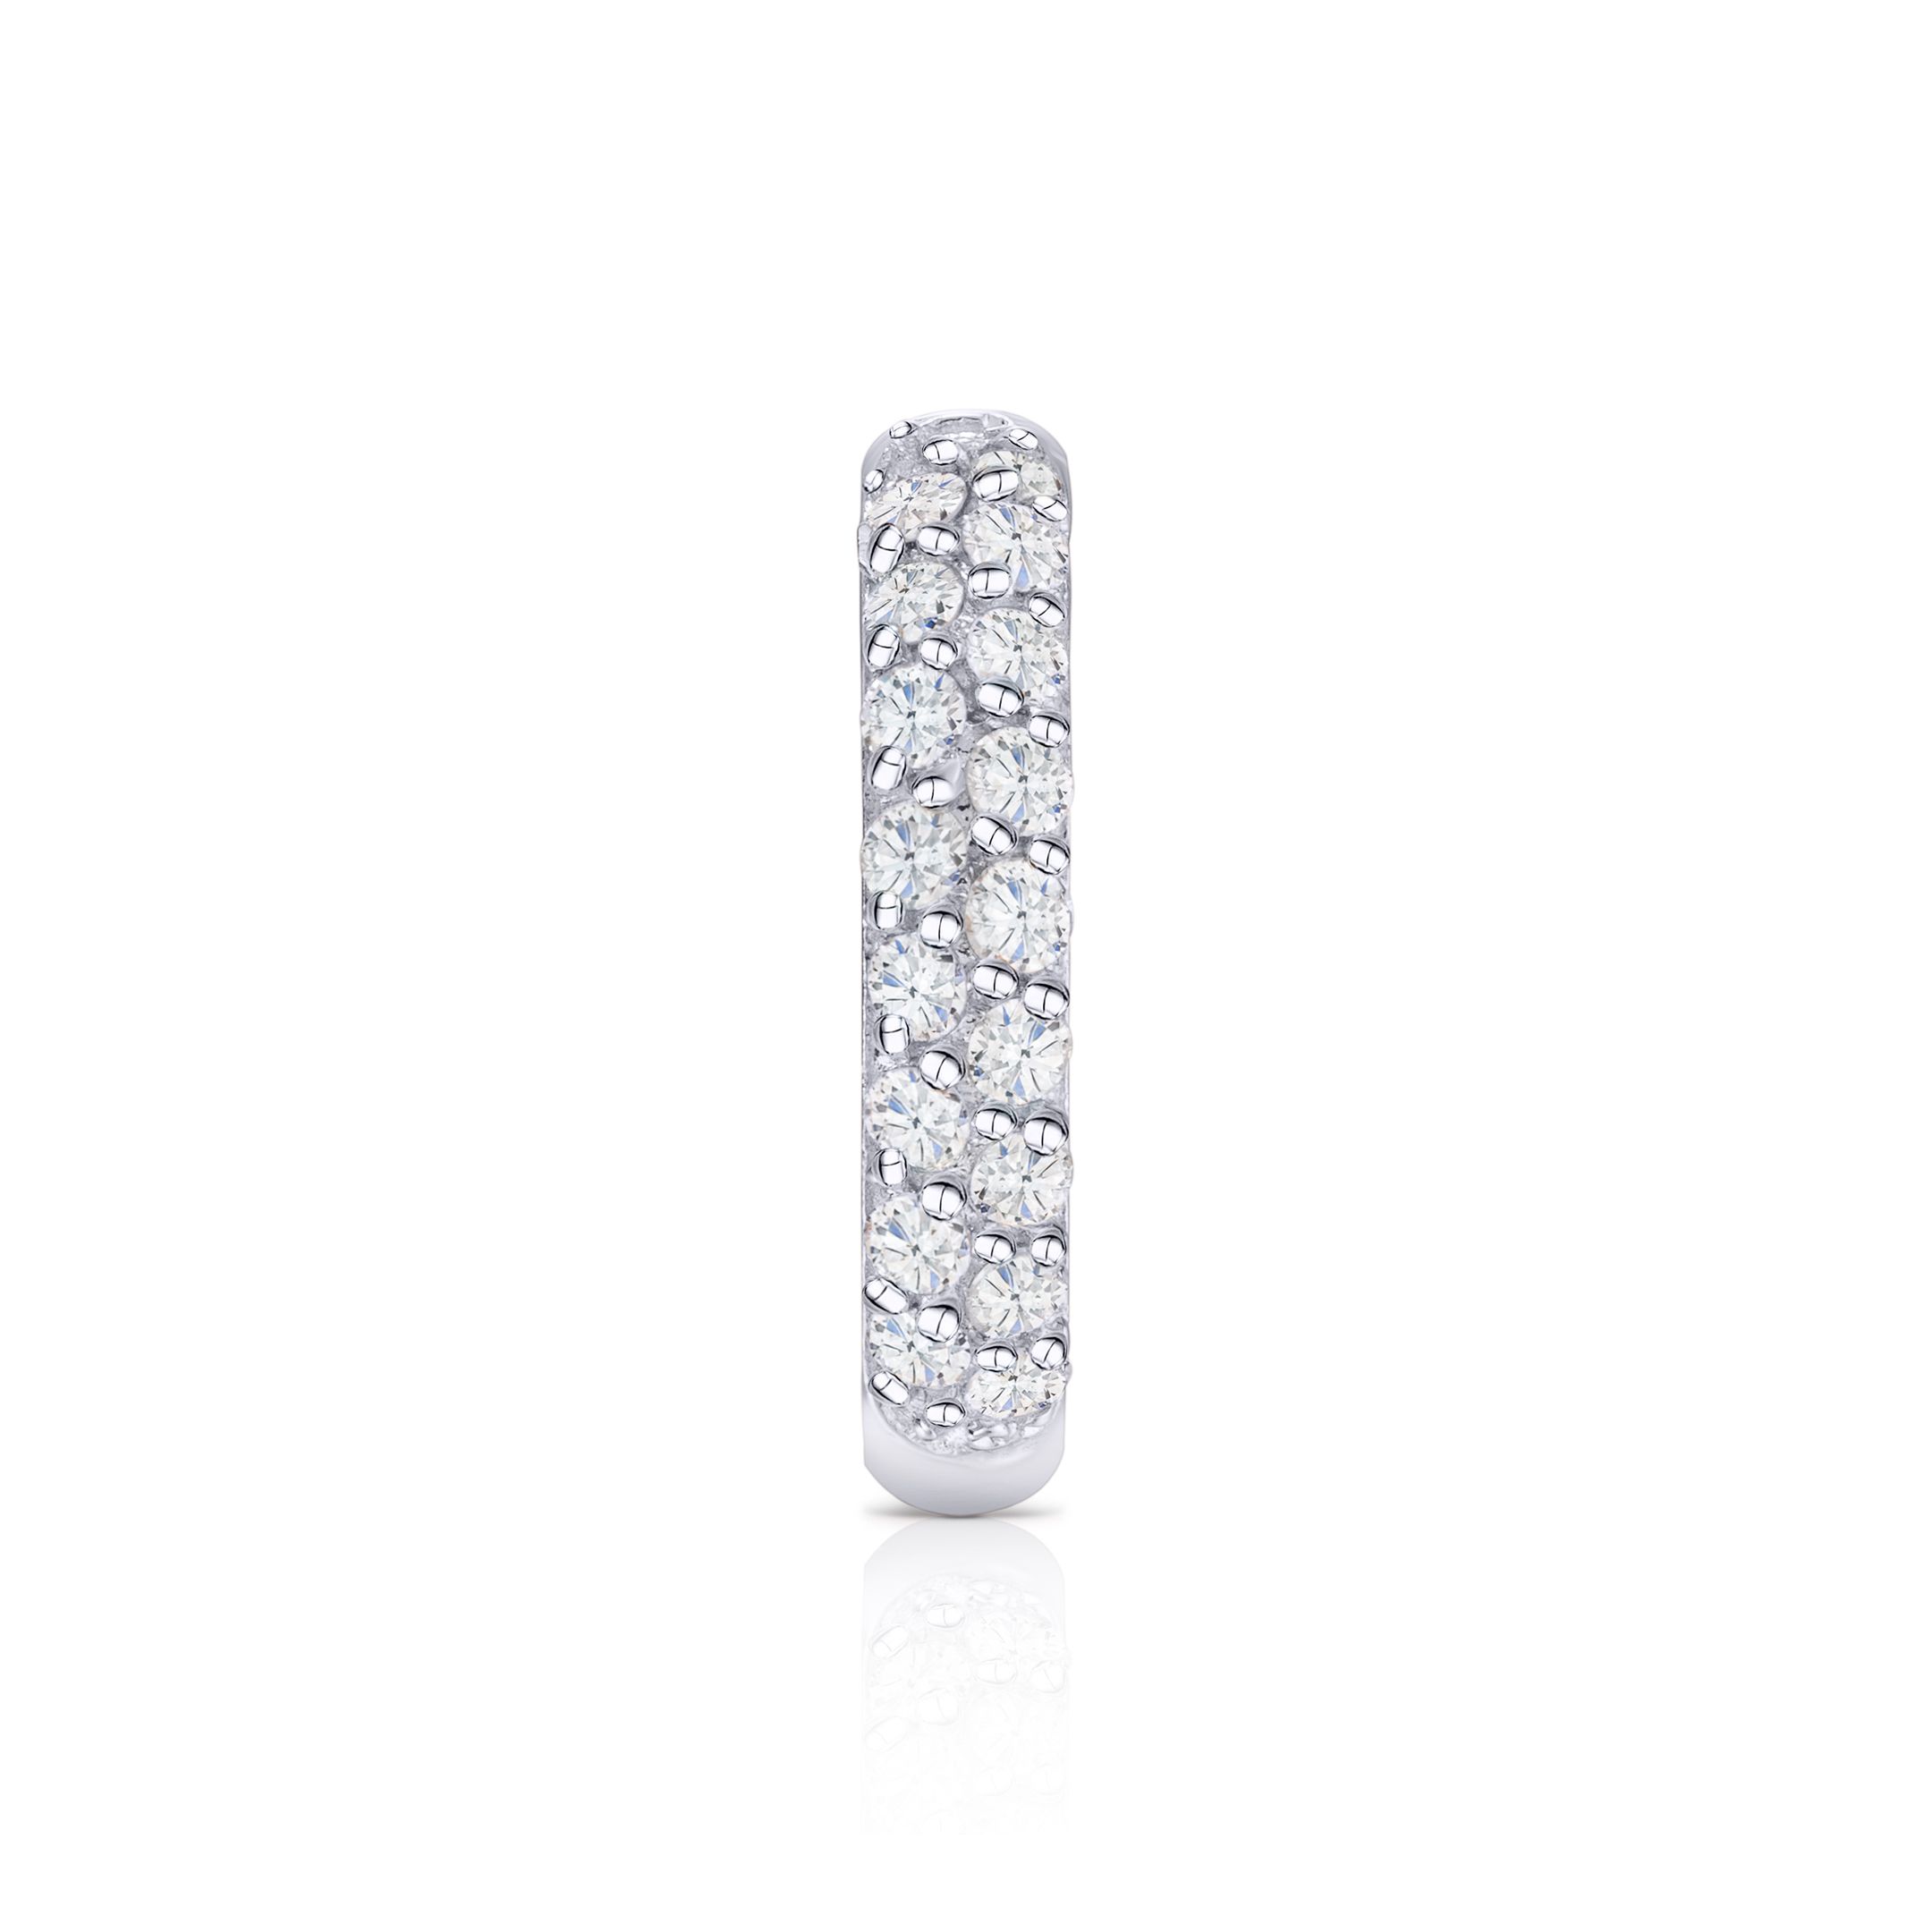 Pendiente Piercing Slice de Diamantes en Oro Blanco de 18 Kt